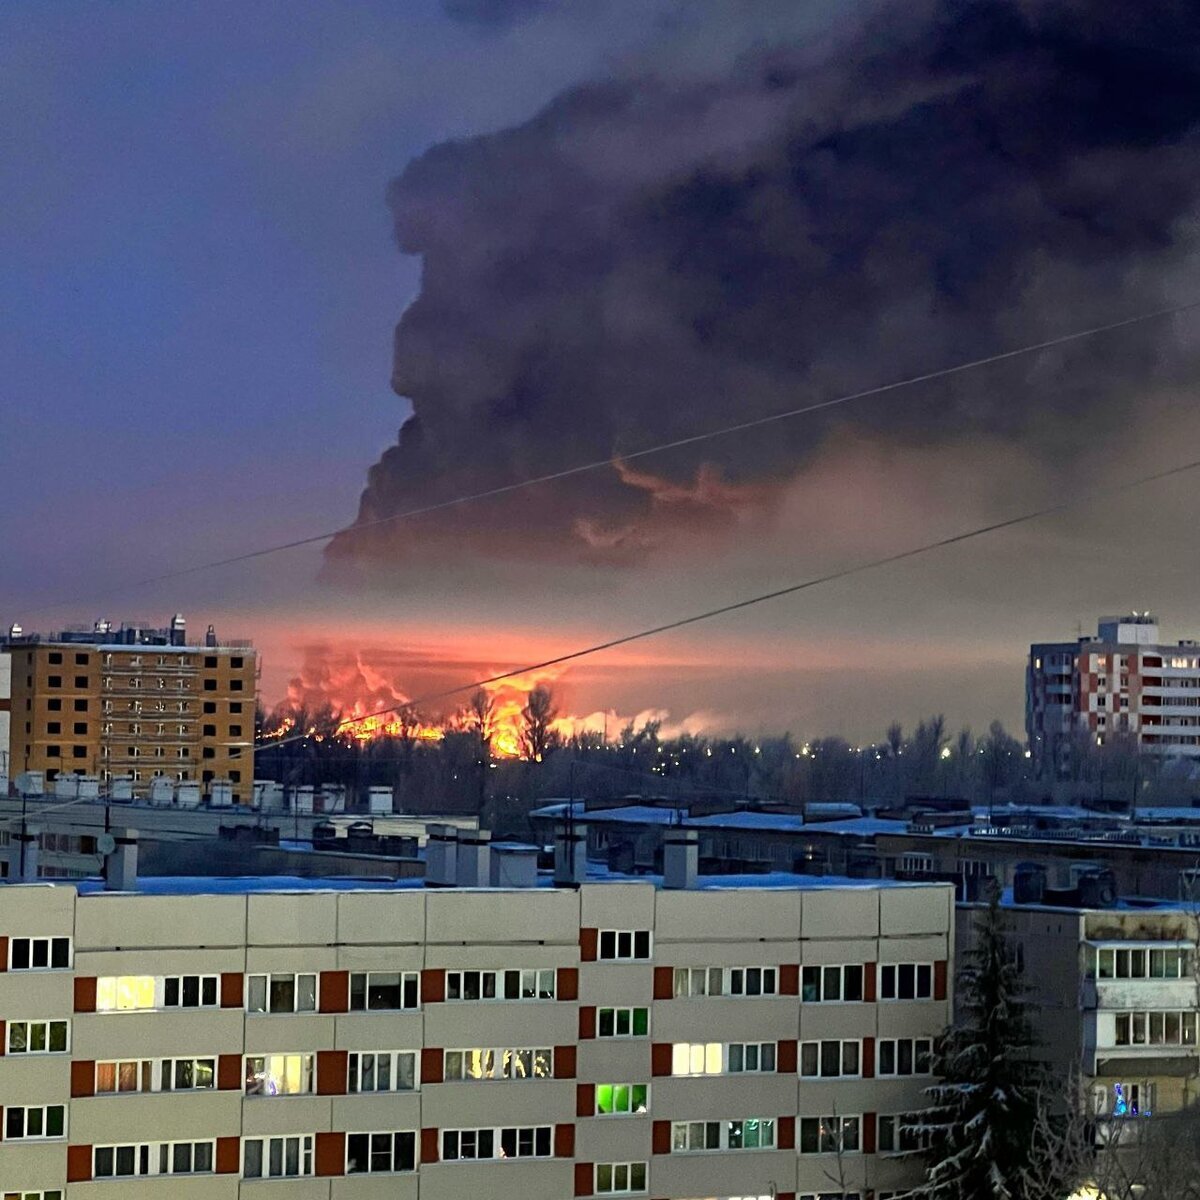 Сегодня ночью в питерских Шушерах полыхнул гигантский пожар, жертвой которого стал клад Wildberries. Как известно, площадь самого склада расположенного на Московском шоссе составляет около 100 тыс. м2.-8